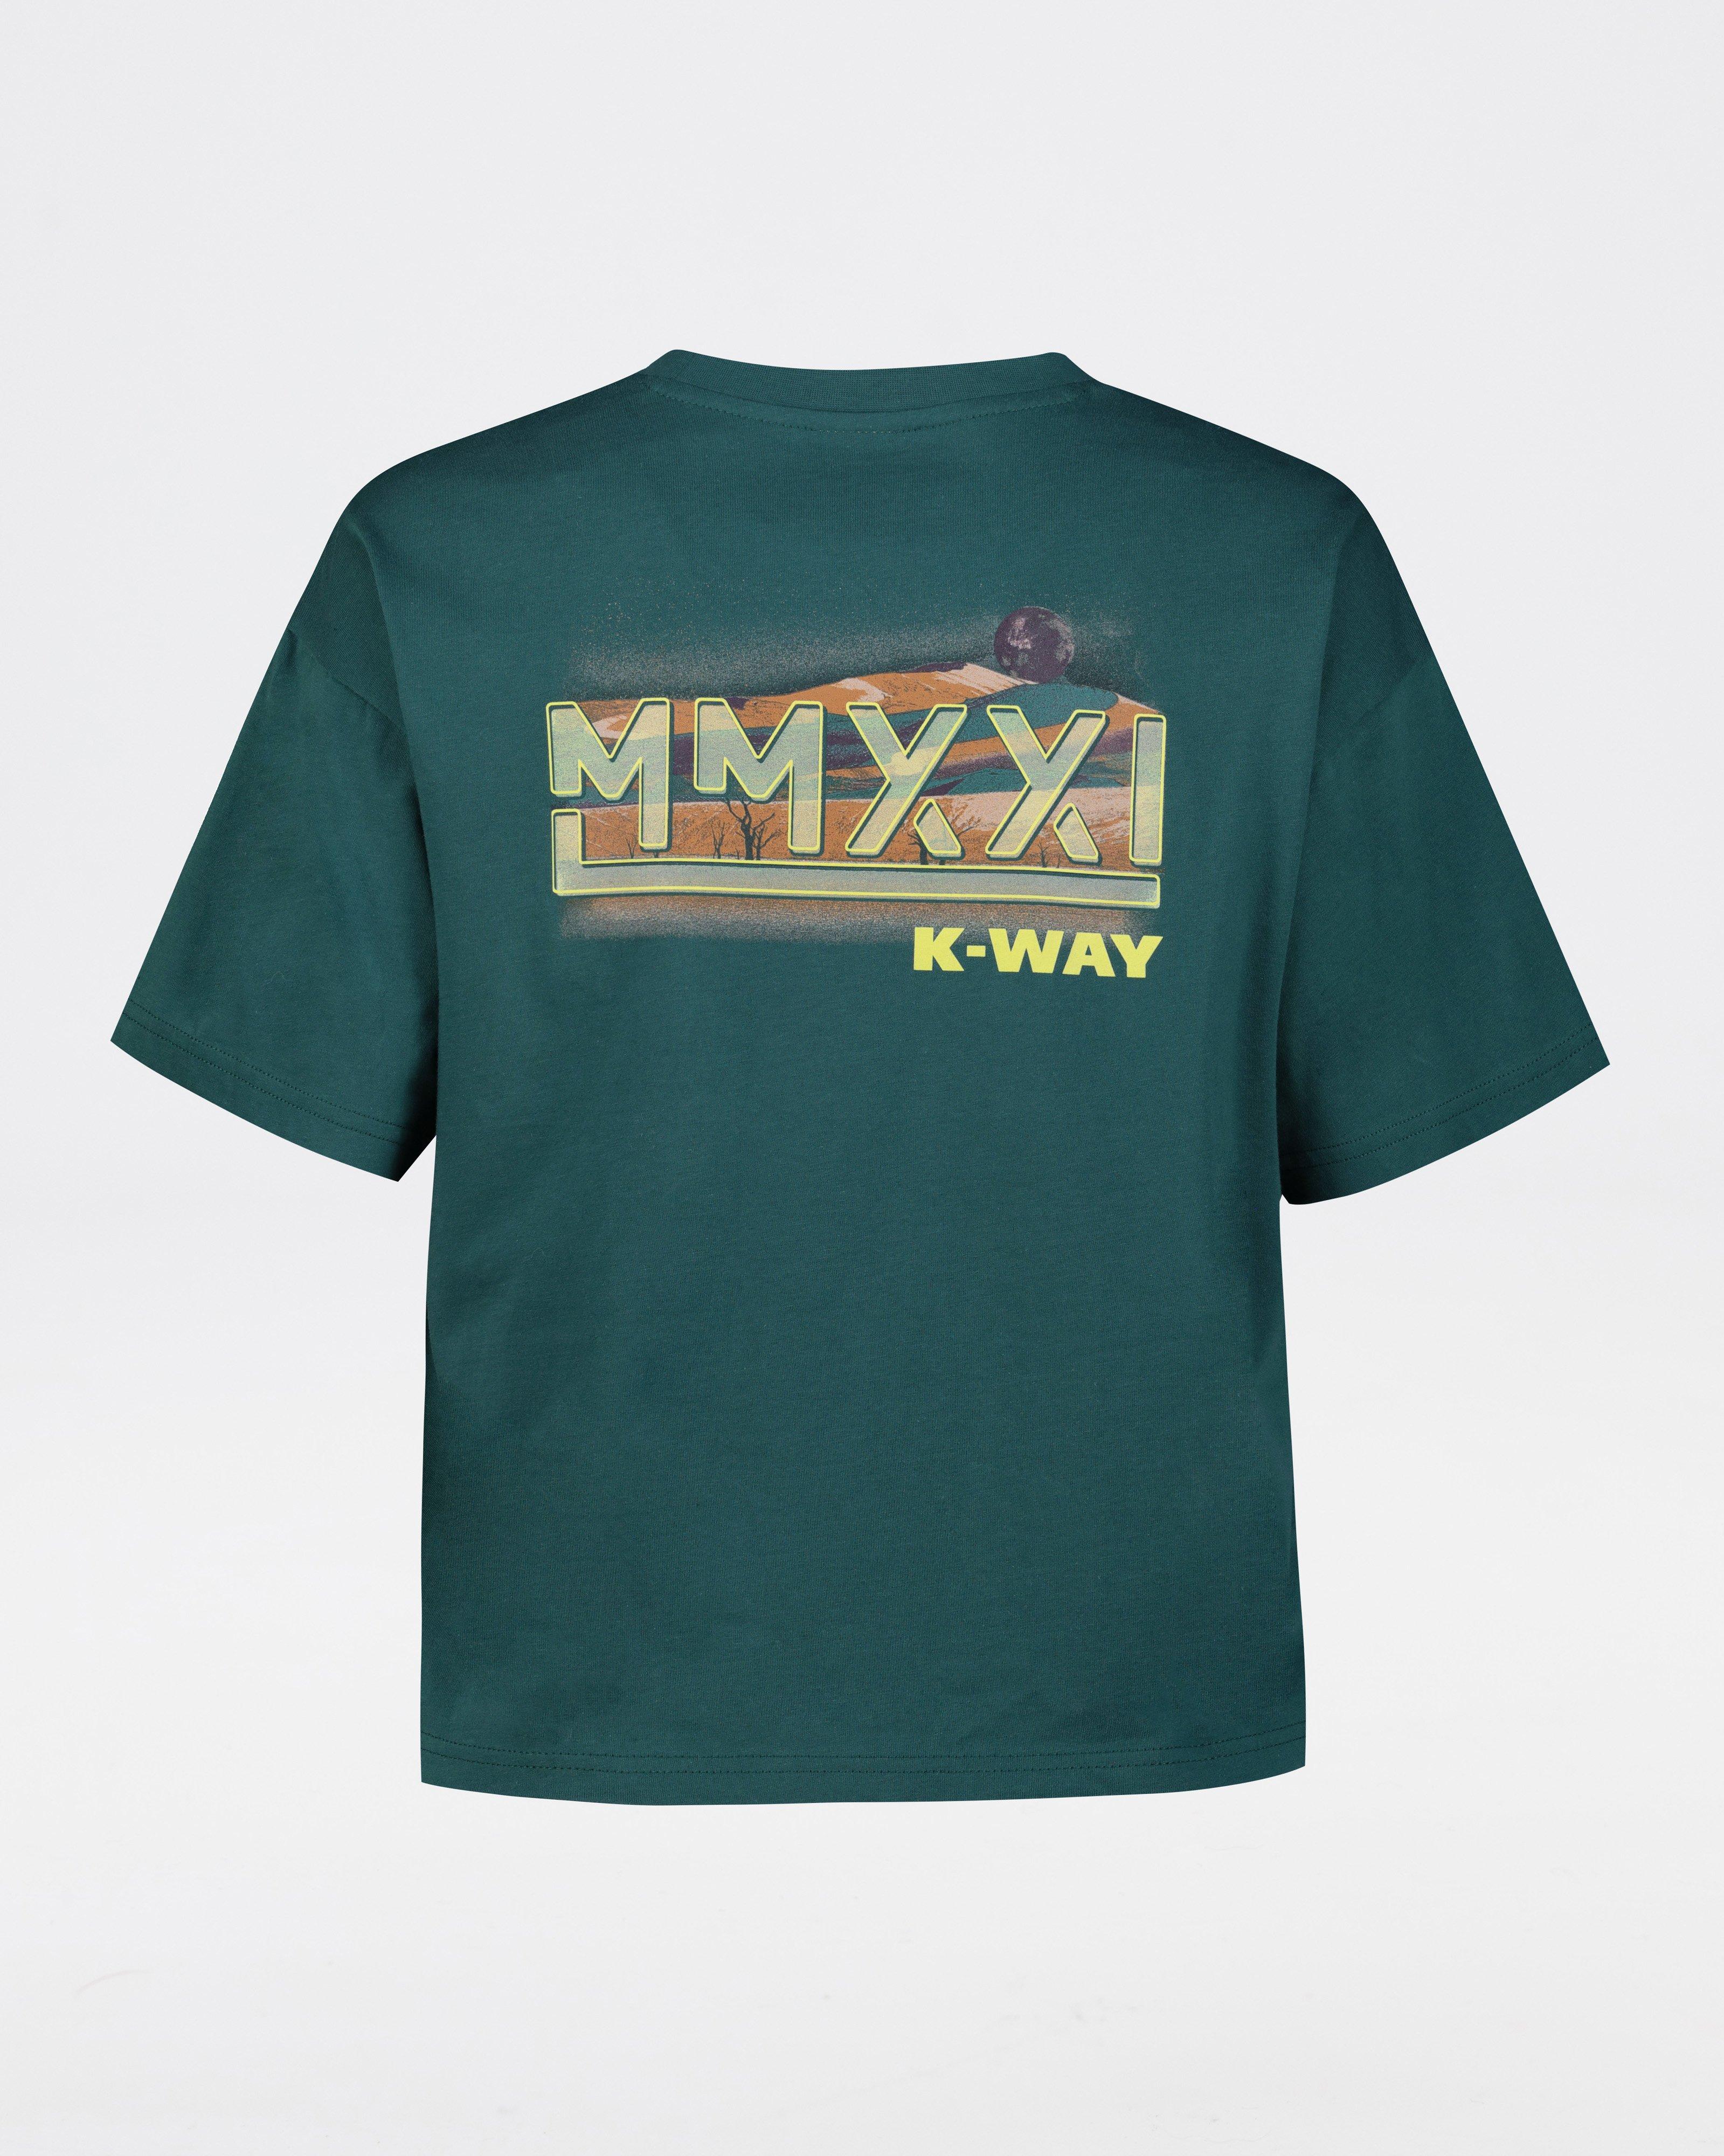 K-Way MMXXI Women's Cropped T-shirt